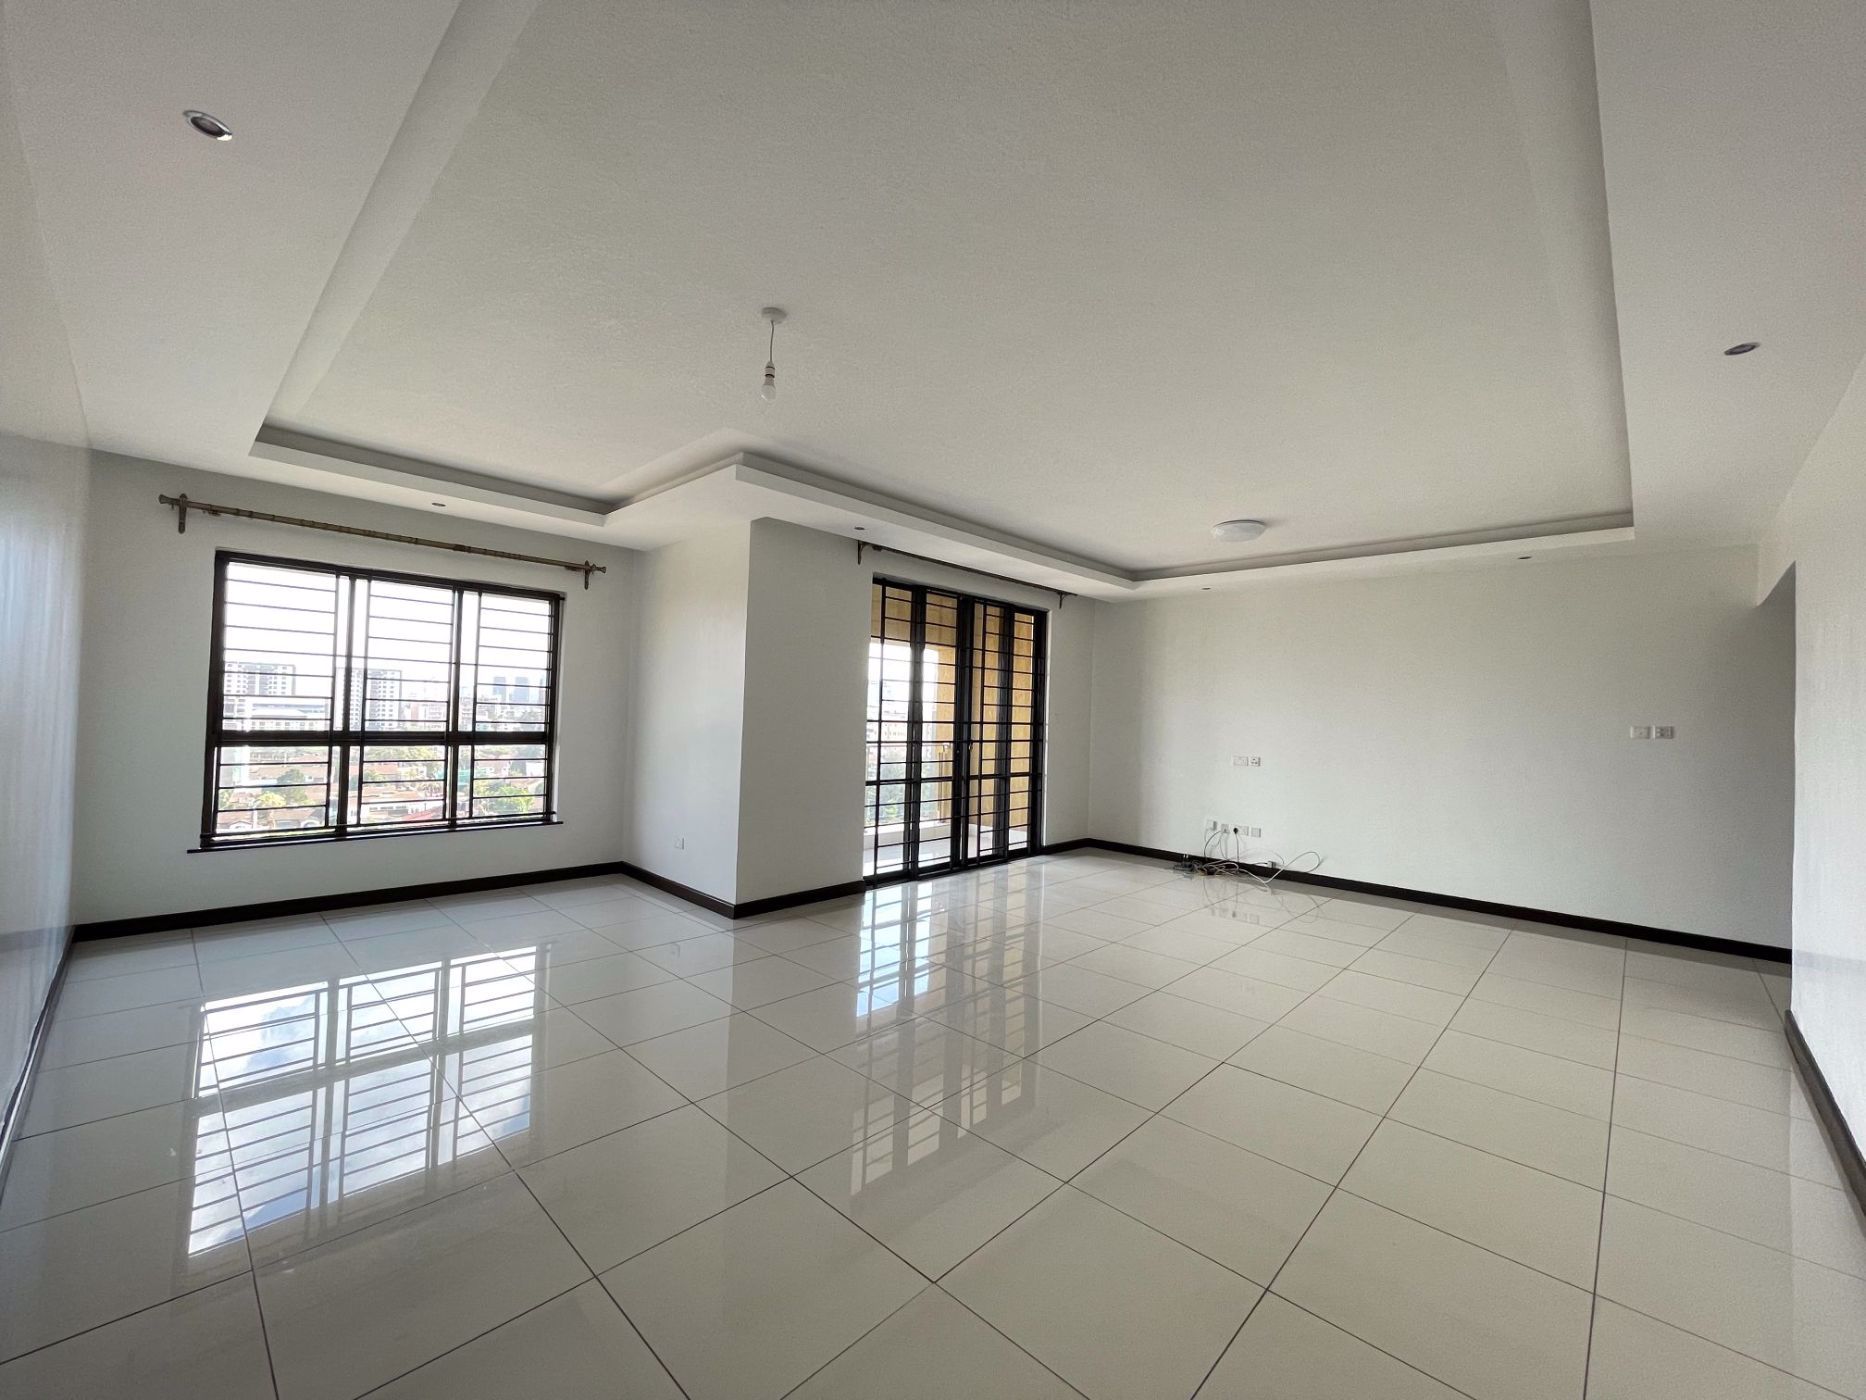 3 bedroom apartment to rent in Westlands (Kenya)